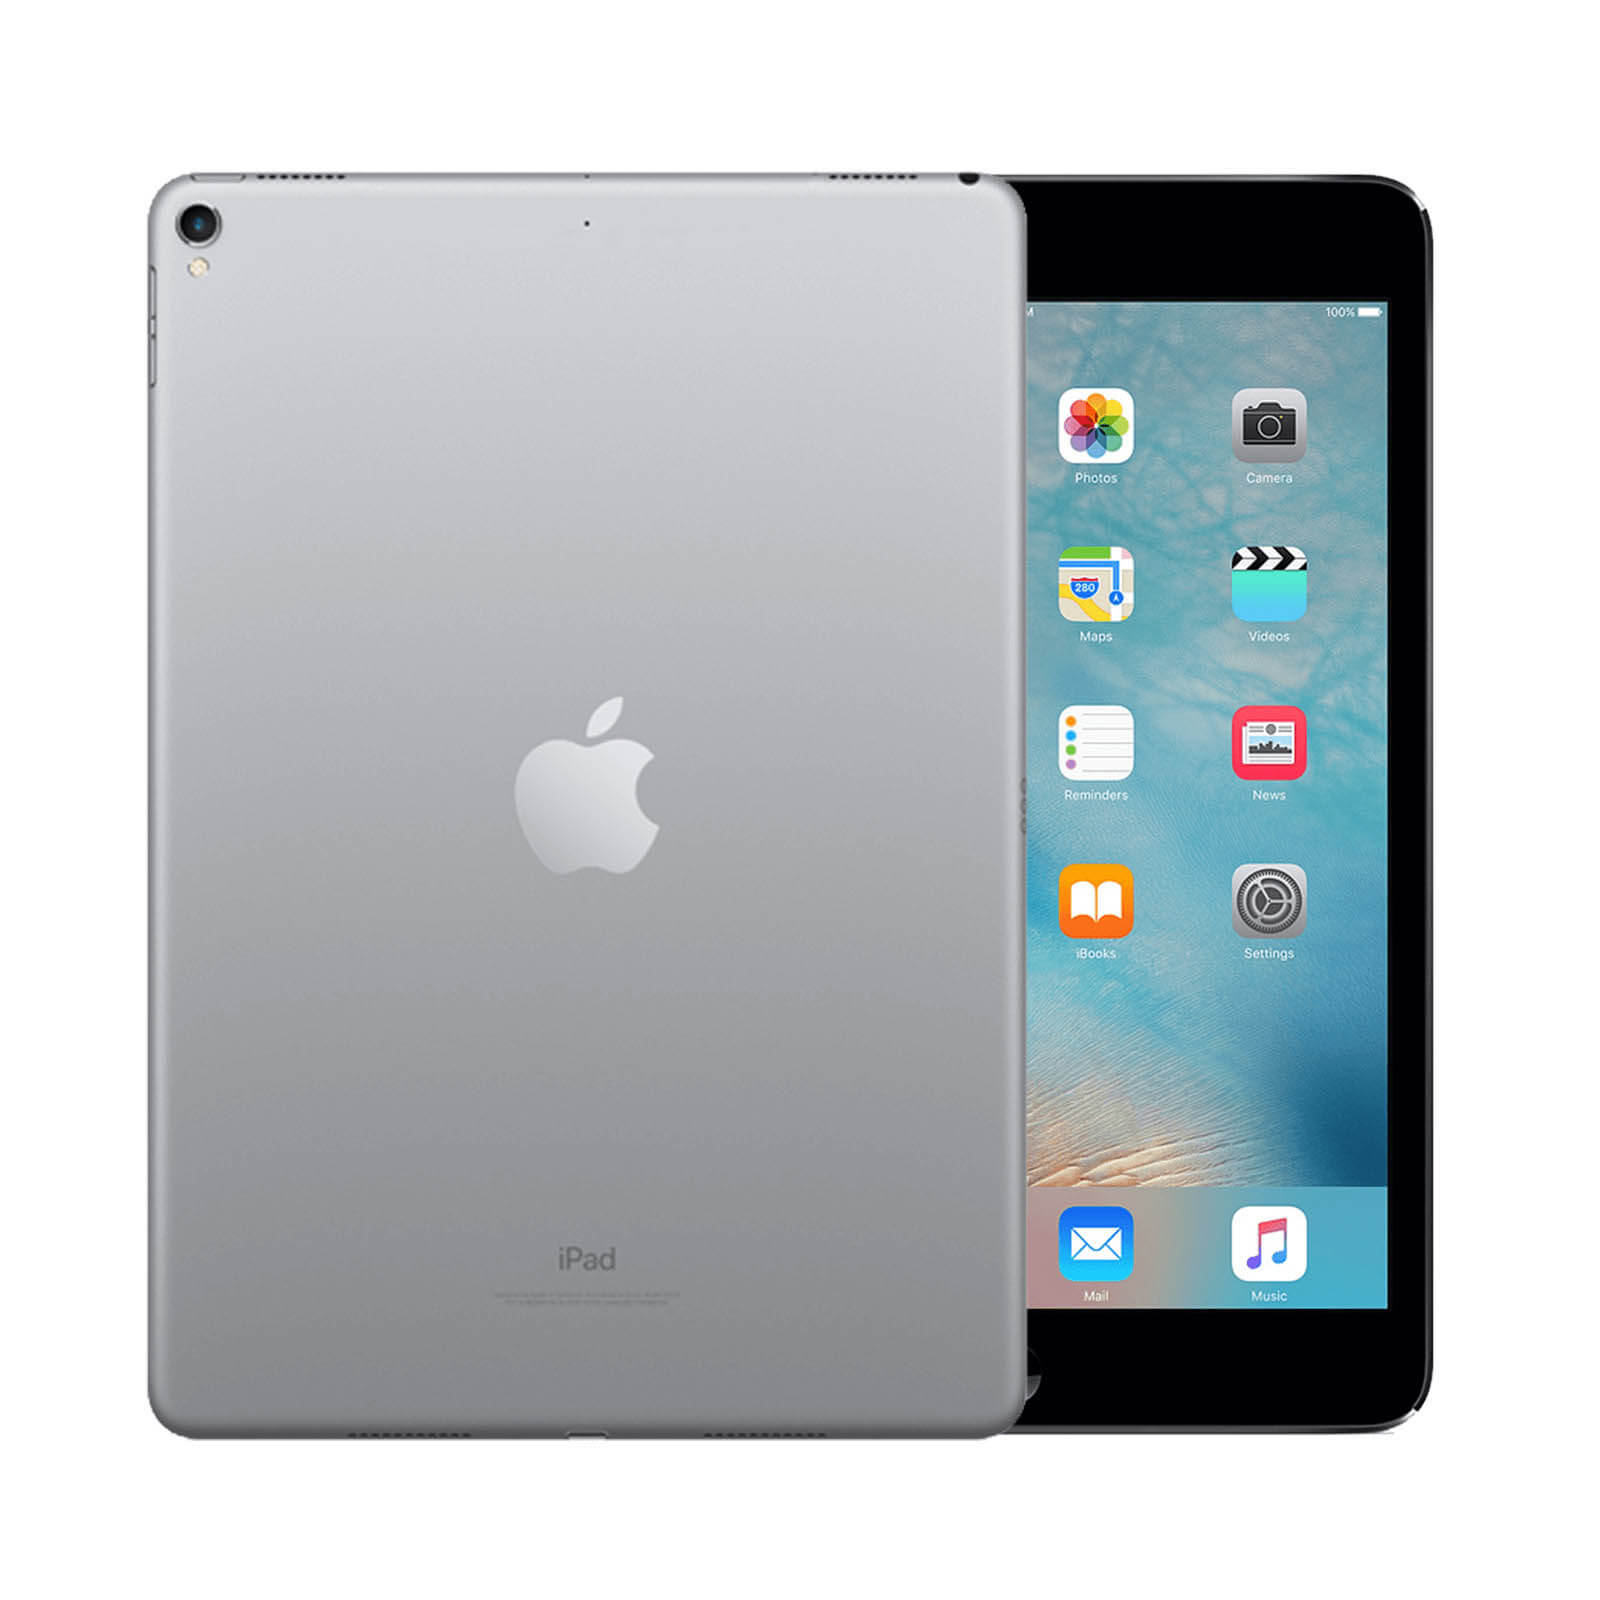 iPad Pro 9.7 Inch 128GB Space Grey Good - WiFi